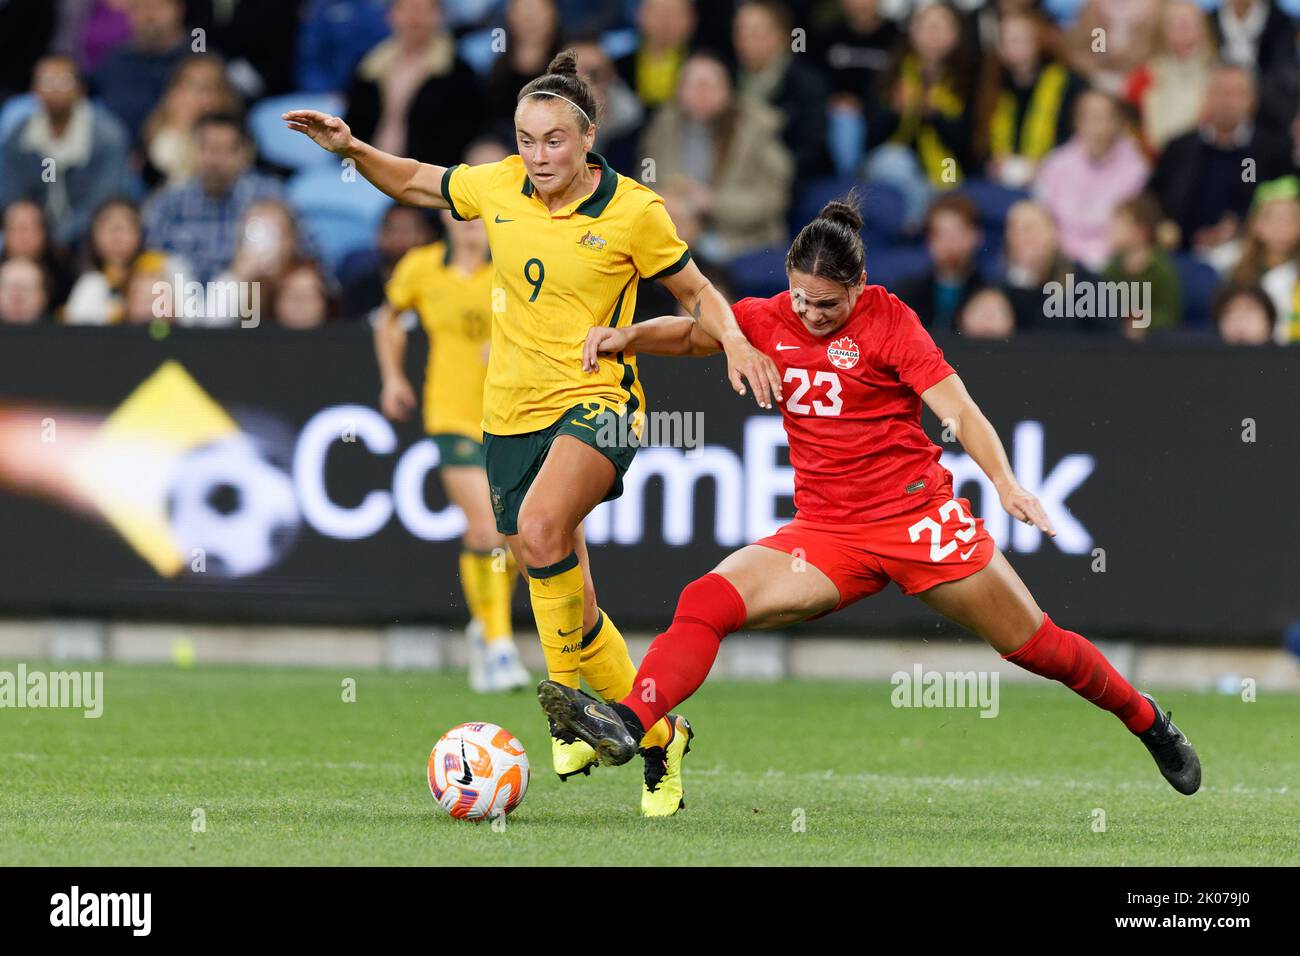 SYDNEY, AUSTRALIA - SETTEMBRE 6: Caitlin Foord of Australia compete per la palla con Bianca St. Georges of Canada durante l'International friendly Foto Stock